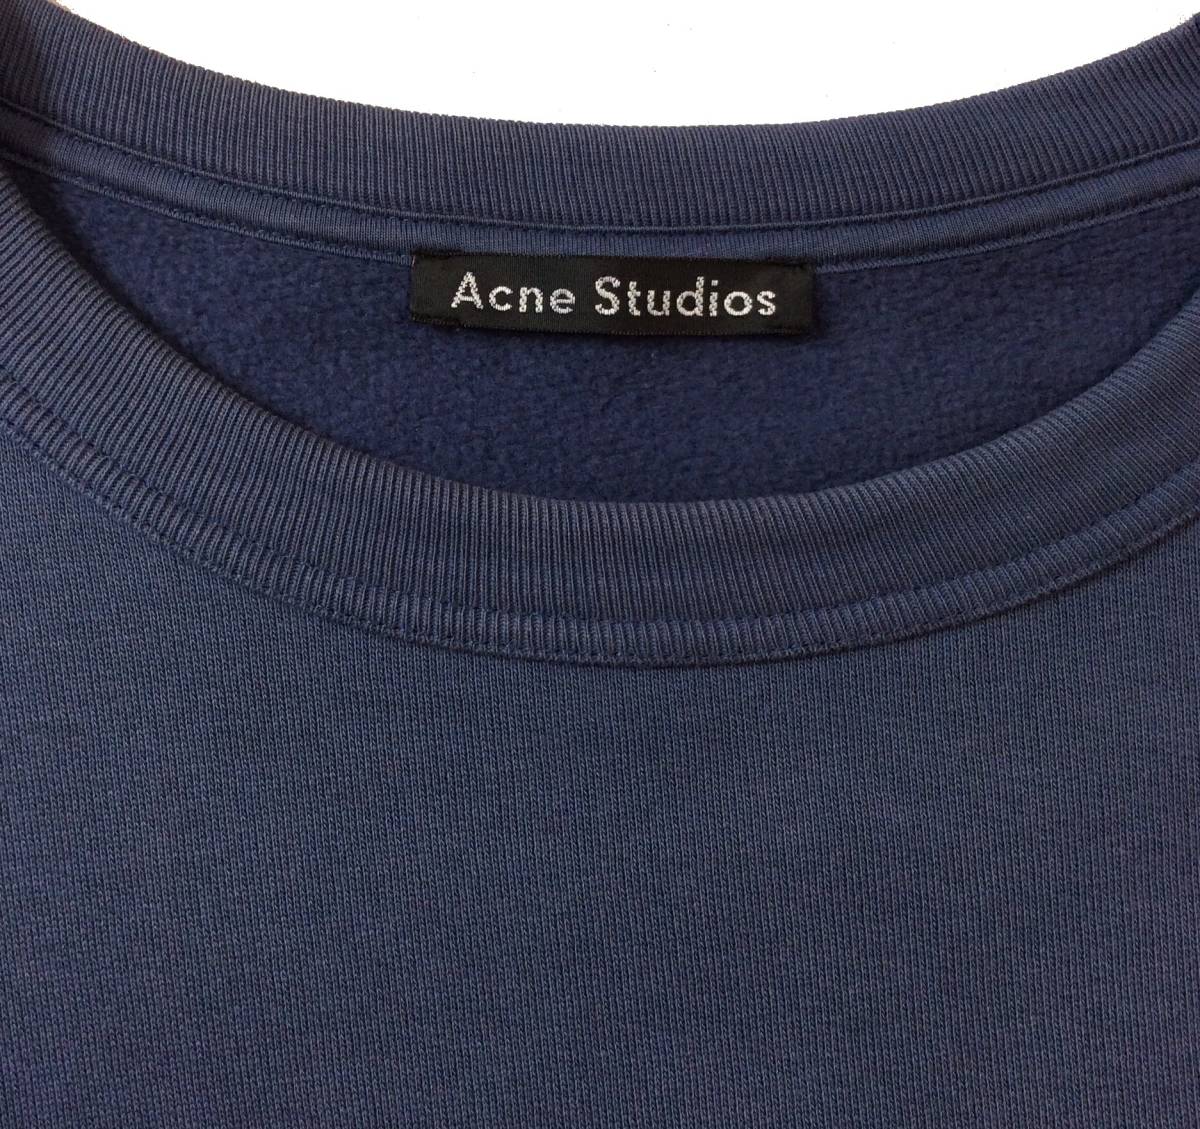 Acne Studios アクネ ストゥディオズ スウェット トレーナー ネイビー コットン メンズ S _画像3